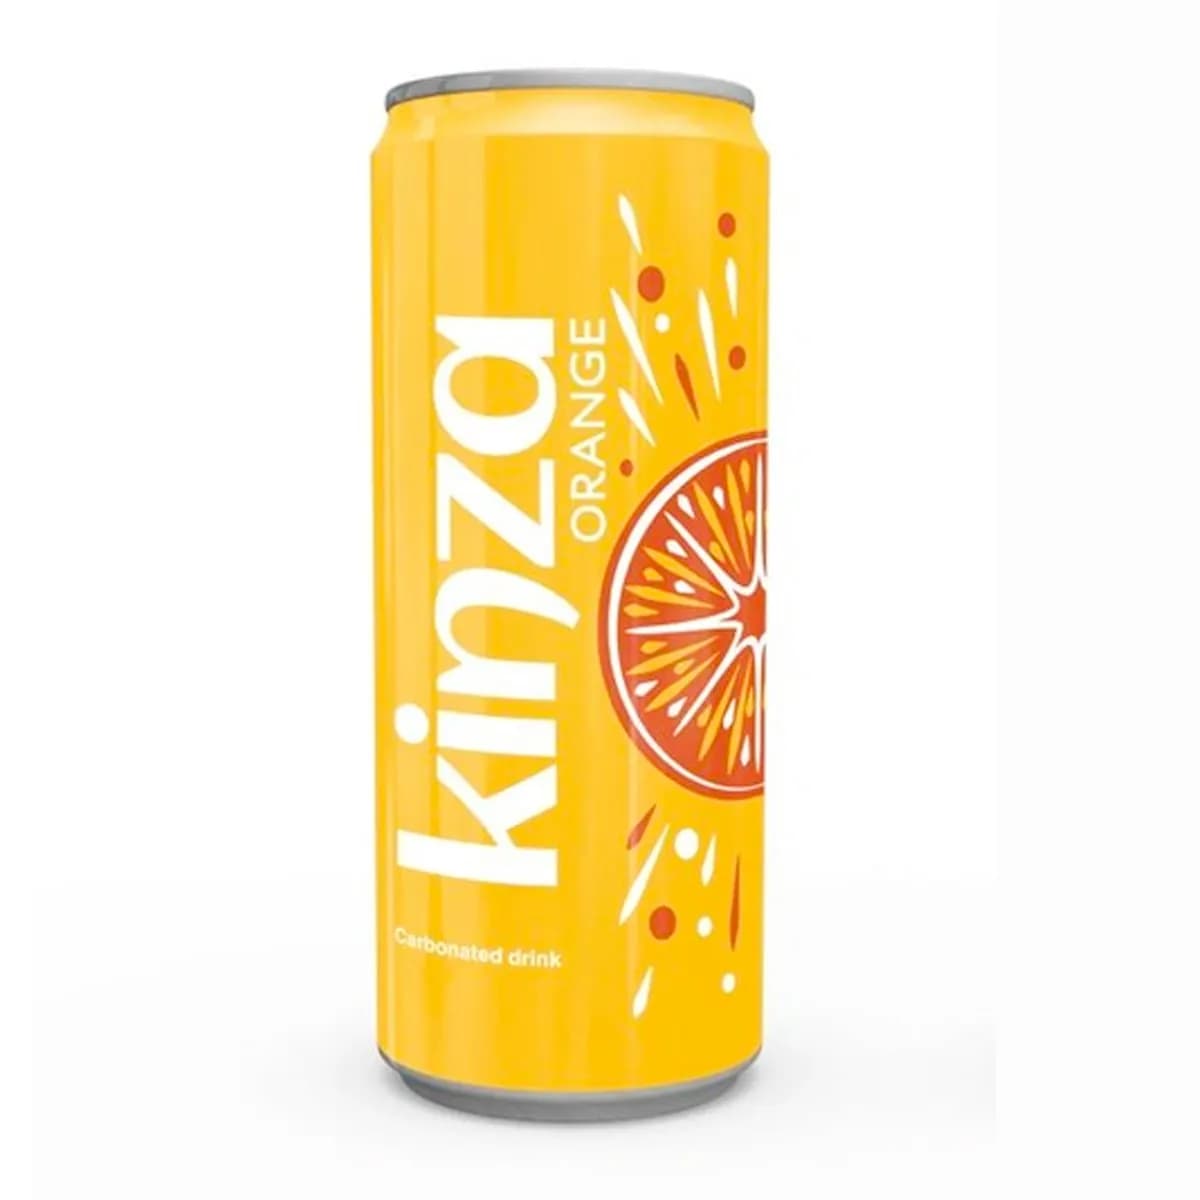 Kinza Orange